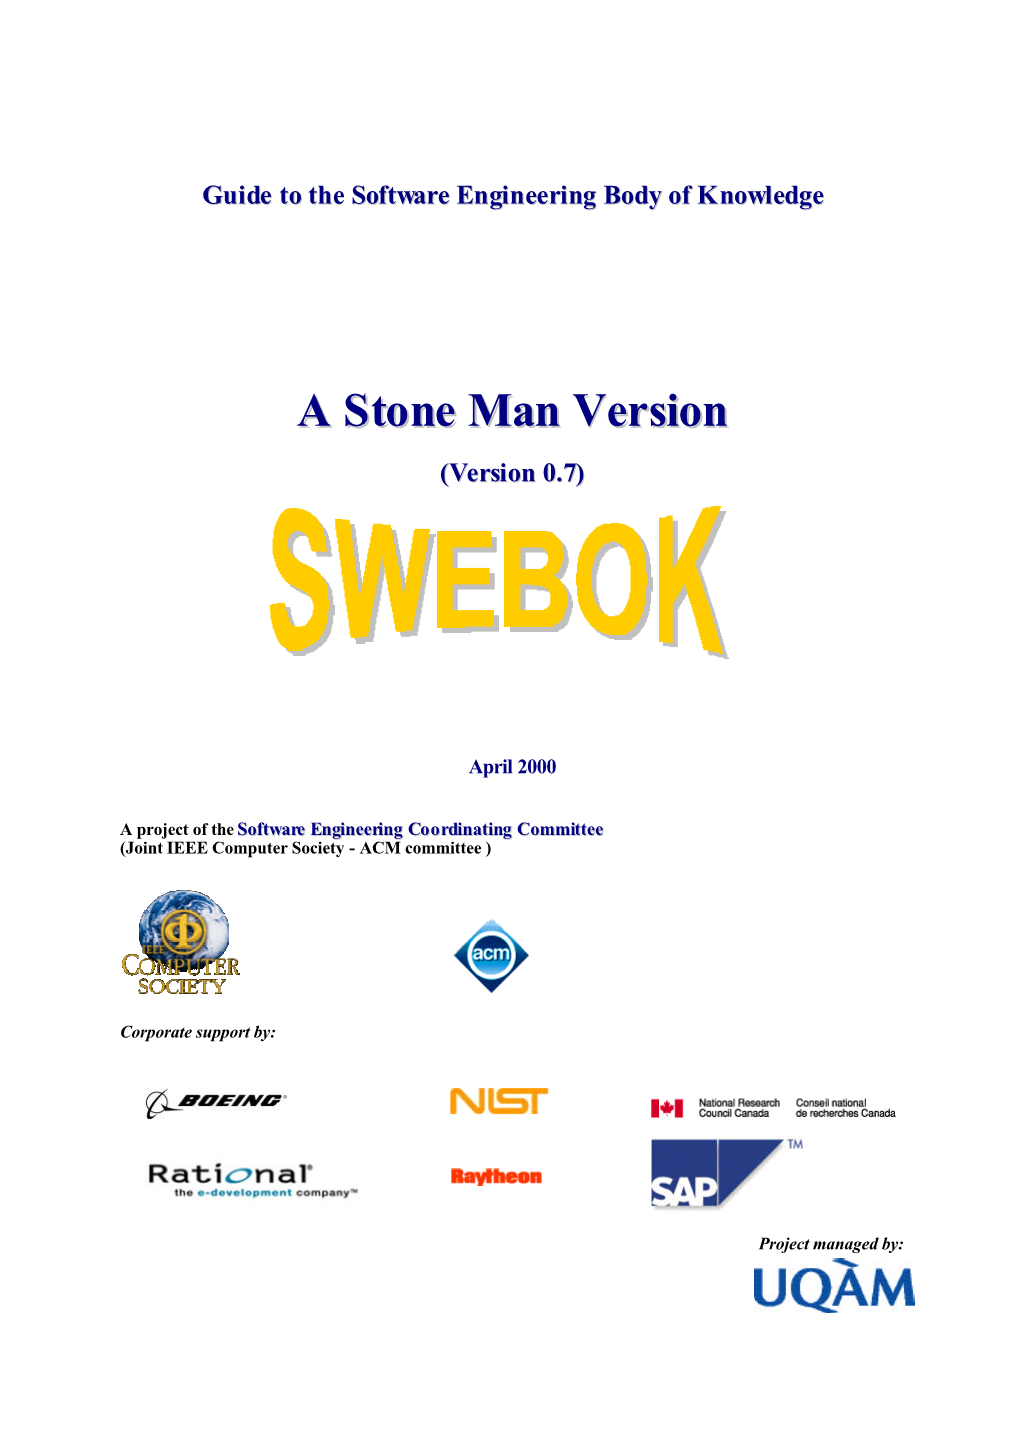 A Stone Man Version